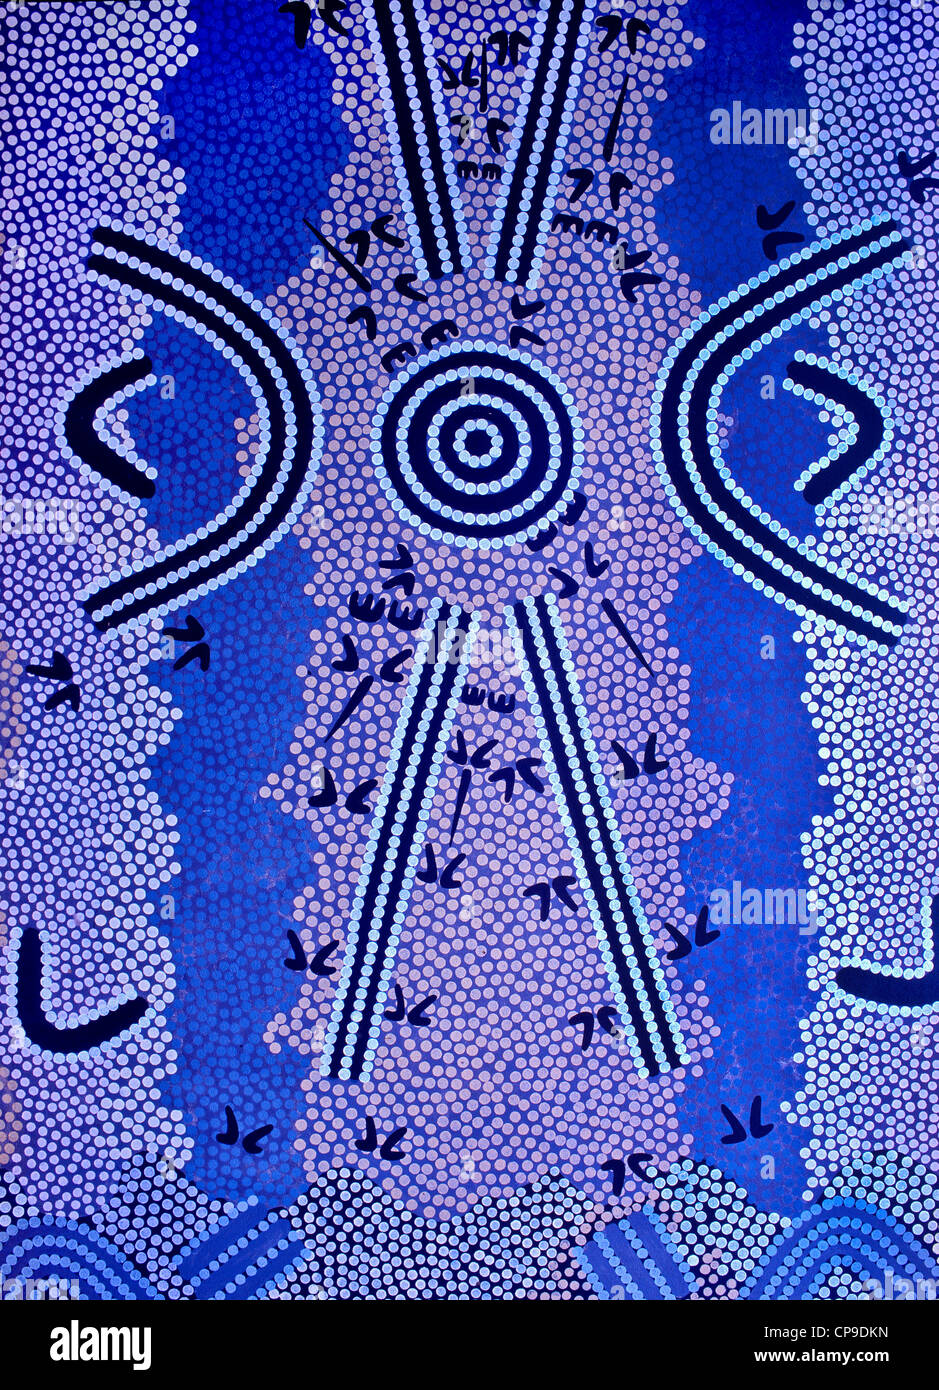 Détail de fresque autochtones, Alice Springs, Australie Banque D'Images